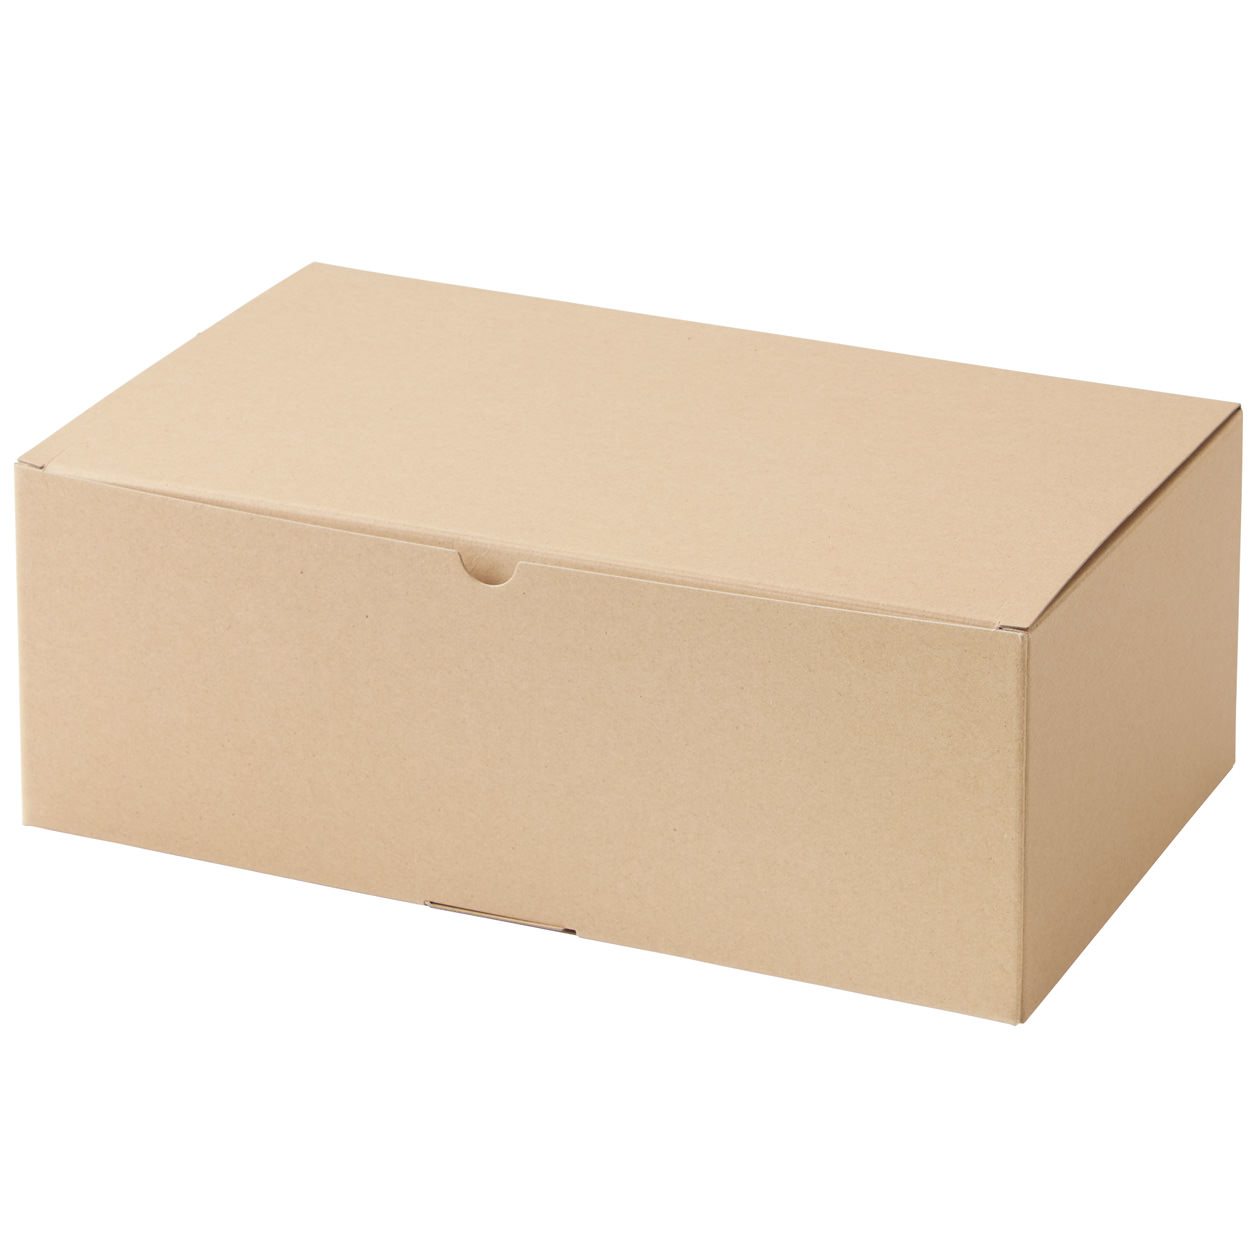 Gift Box 360x210x125mm